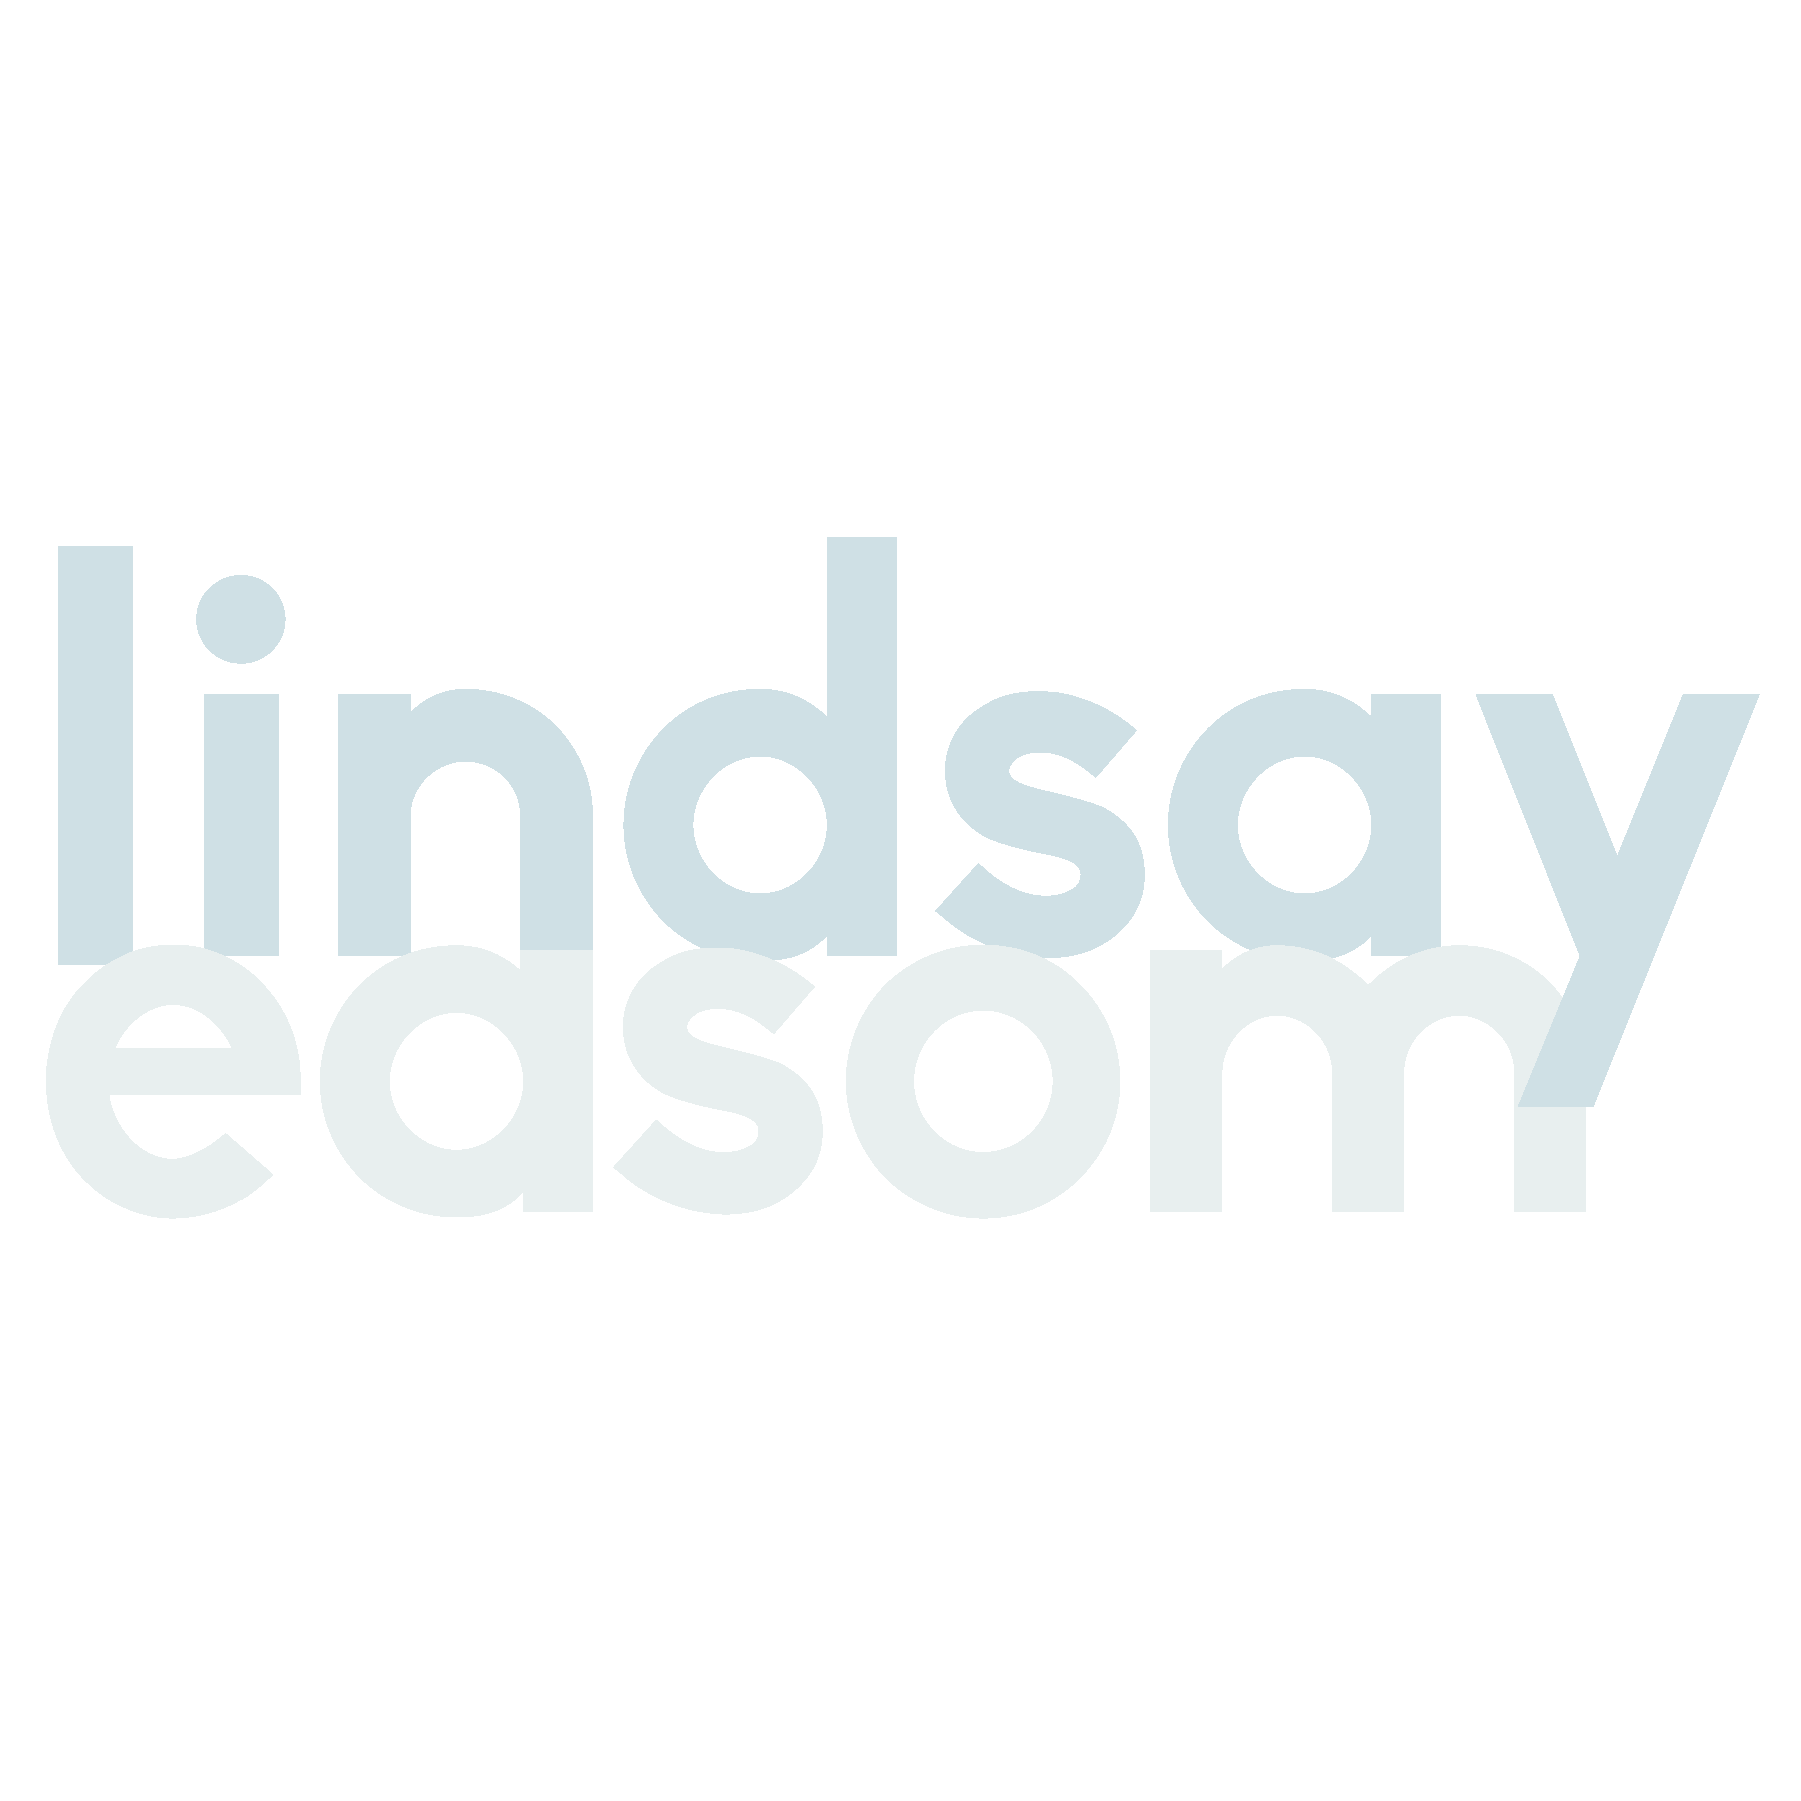 Lindsay Easom